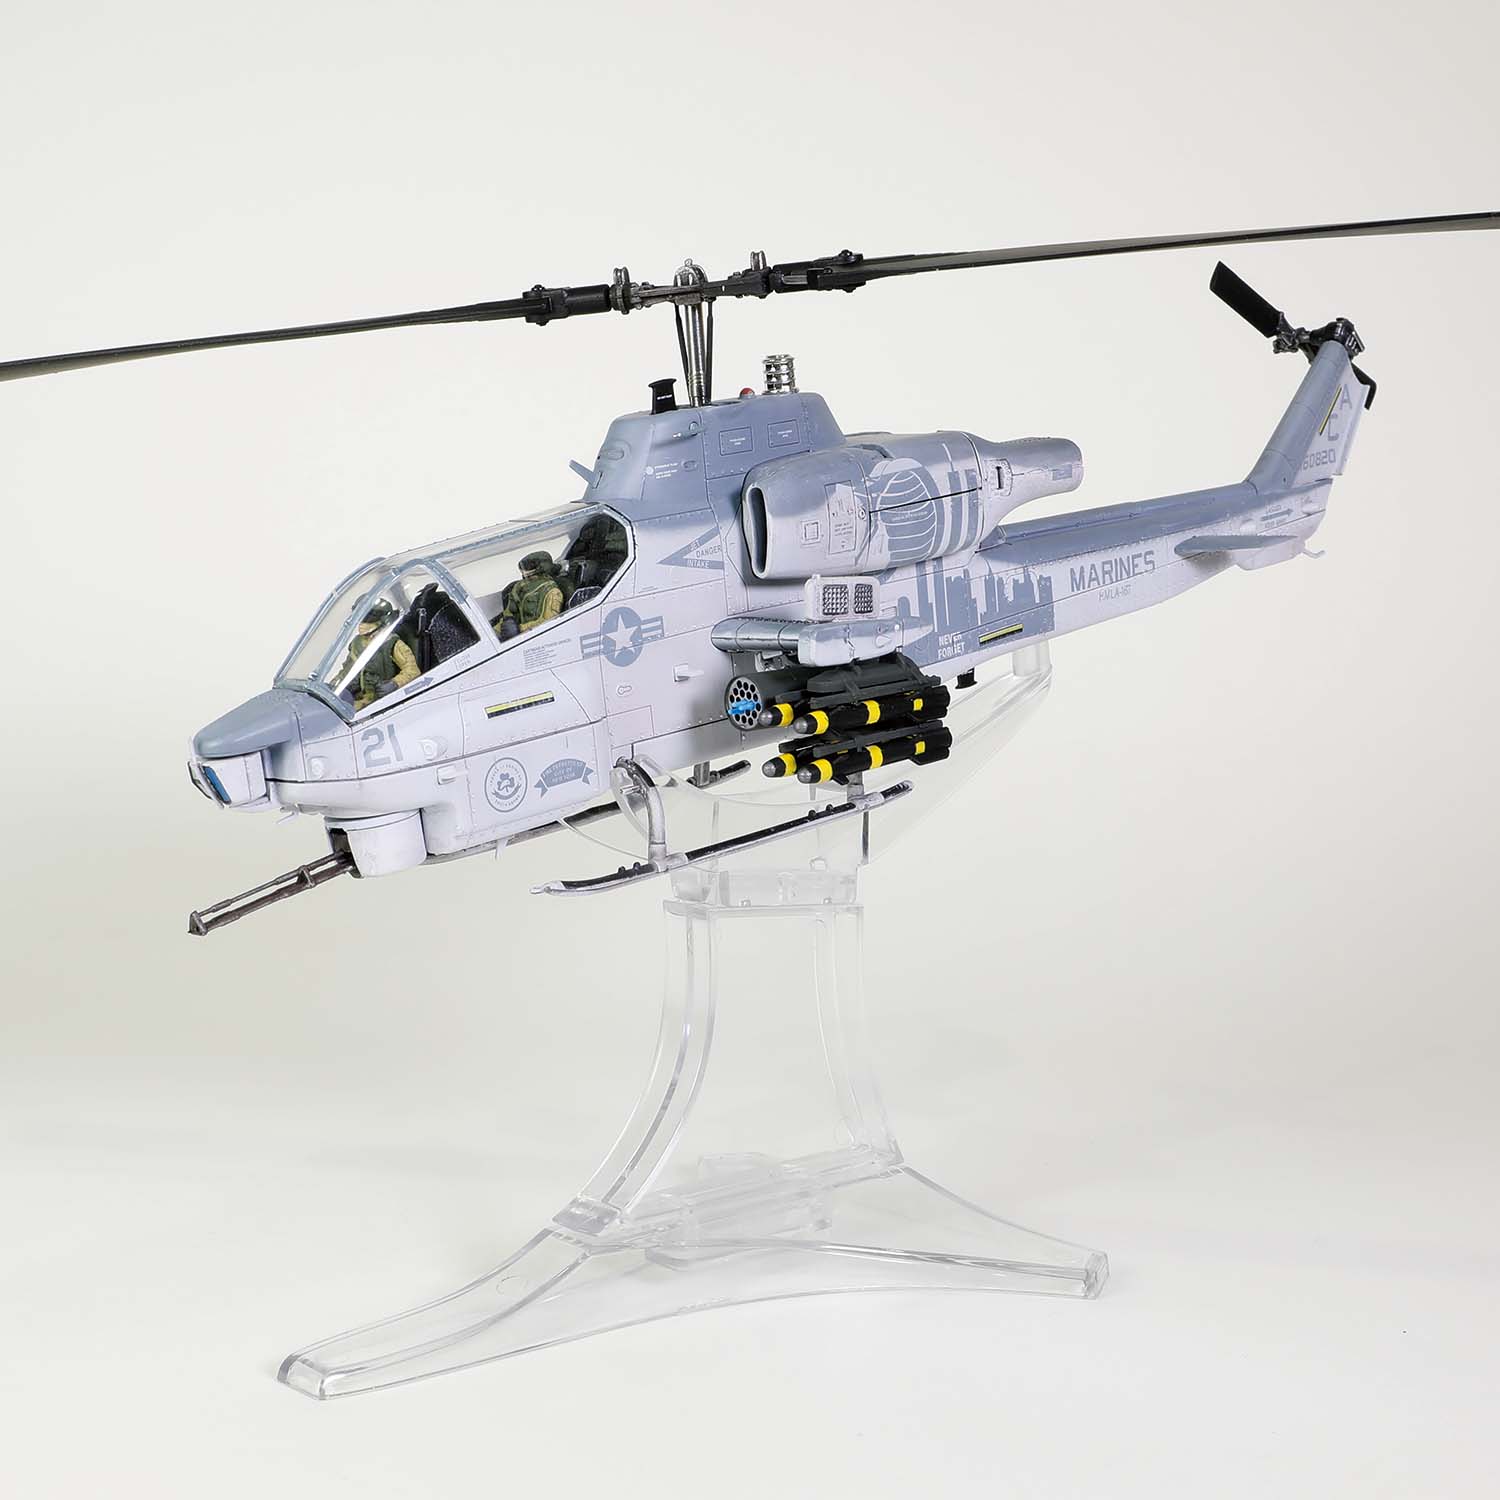 AH-1W アメリカ海兵隊 第169海兵軽攻撃ヘリコプター飛行隊「ヴァイパーズ」 特別塗装「ニューヨーク市消防局9.11」 不朽の自由作戦時 キャンプ・バスティオン基地 アフガニスタン 2012年12月 SN21/#160820 1/48 [55709]